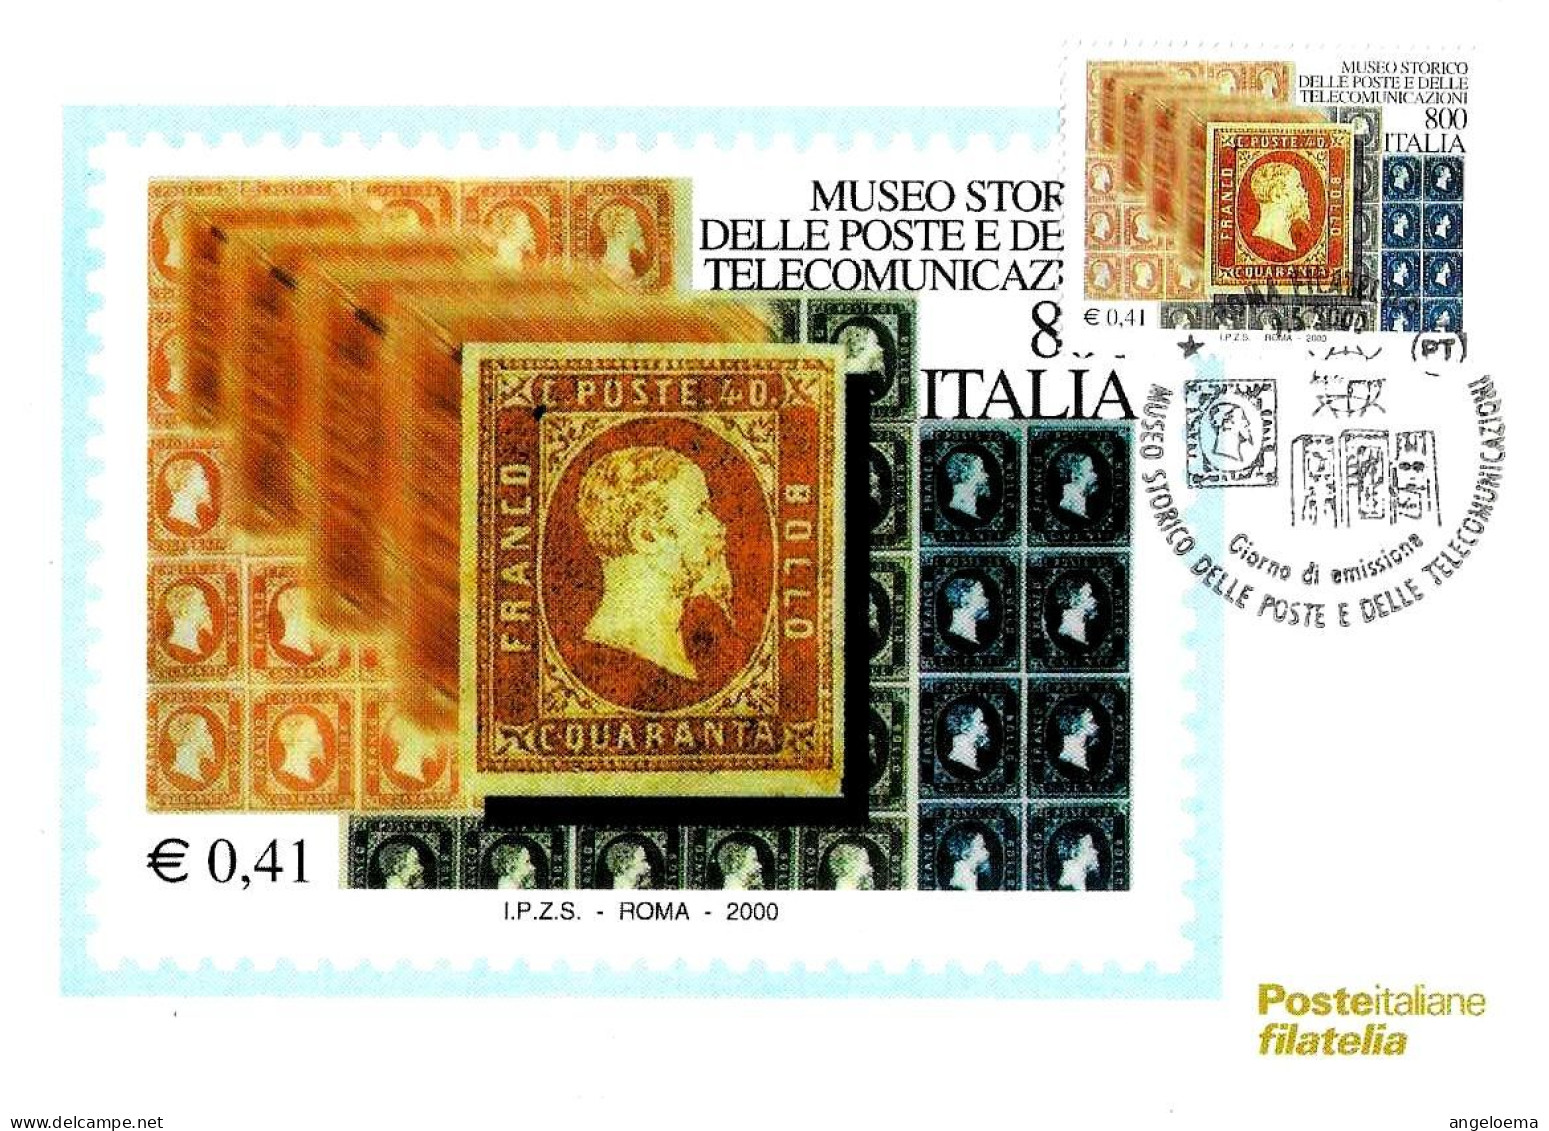 ITALIA ITALY - 2000 ROMA Museo Poste E Telecomunicazioni Francobolli Regno Di Sardegna Annullo Fdc Su Cartolina PT - 770 - Philatelic Exhibitions